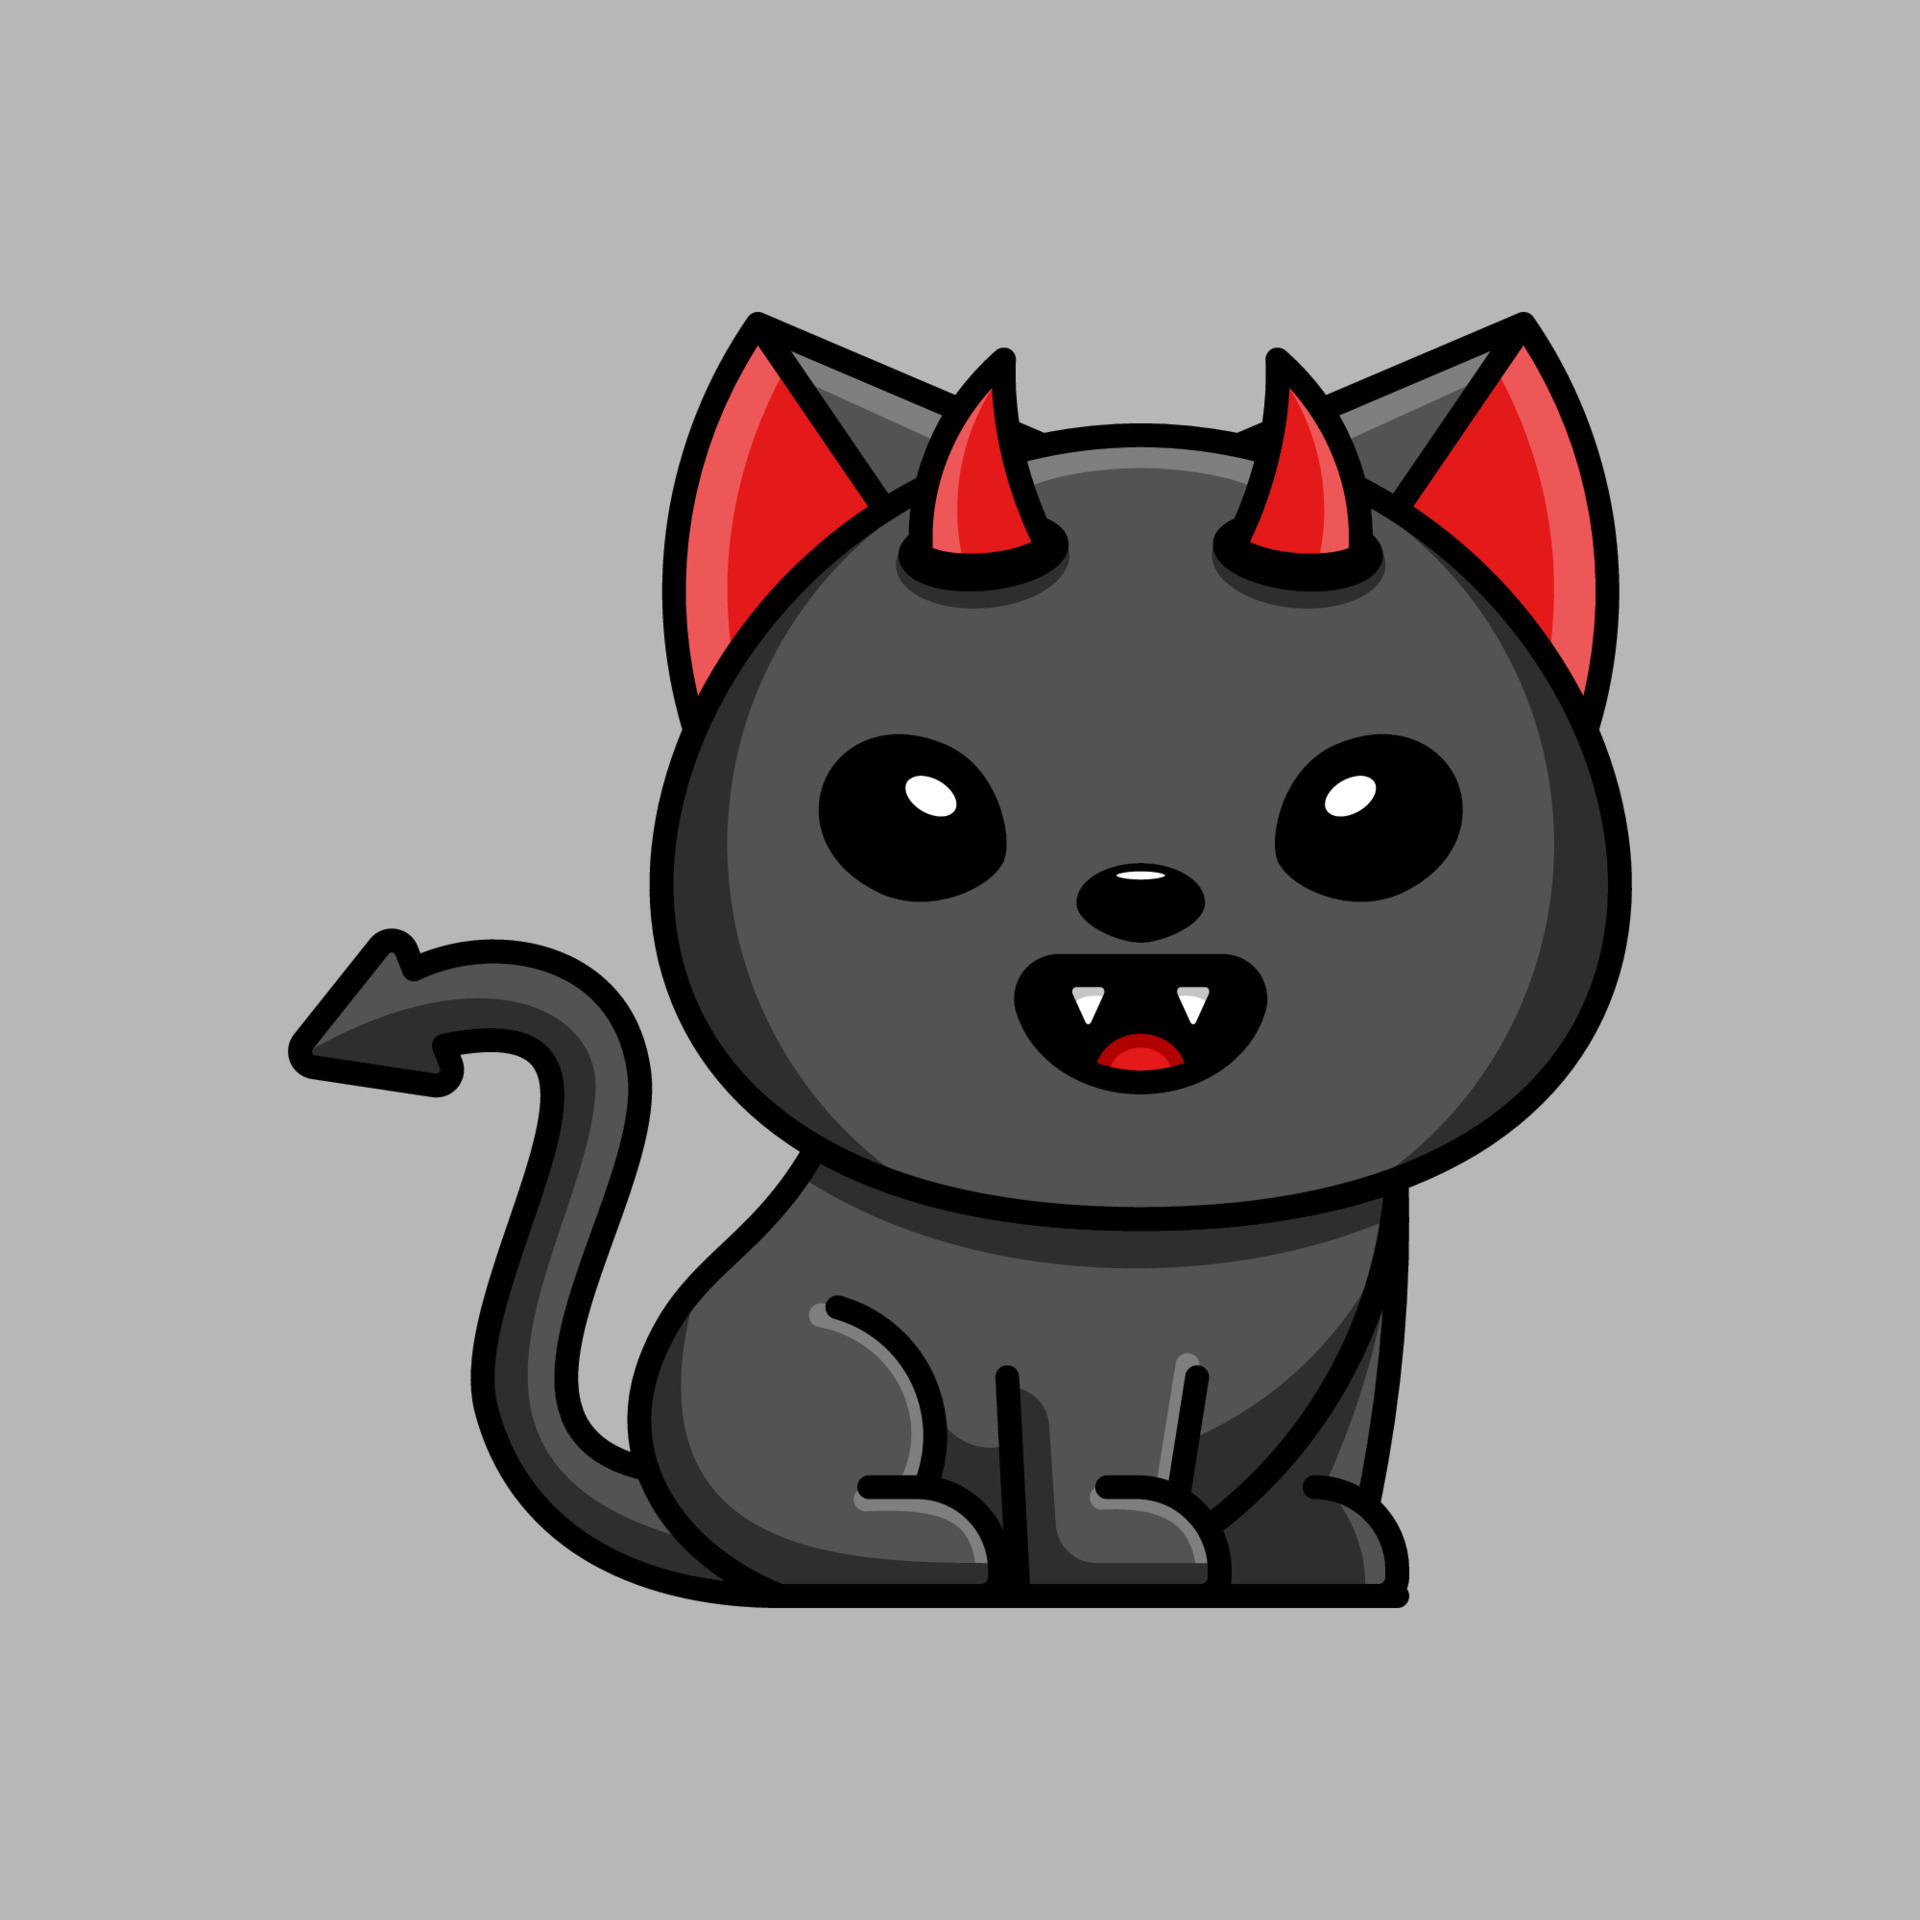 Turma Gato - Feliz Dia das Bruxas TurmaGato! O Google lançou a parte 2 do  jogo que você é um gatinho bruxo e tem que expulsar os fantasmas! Veio a  calhar totalmente